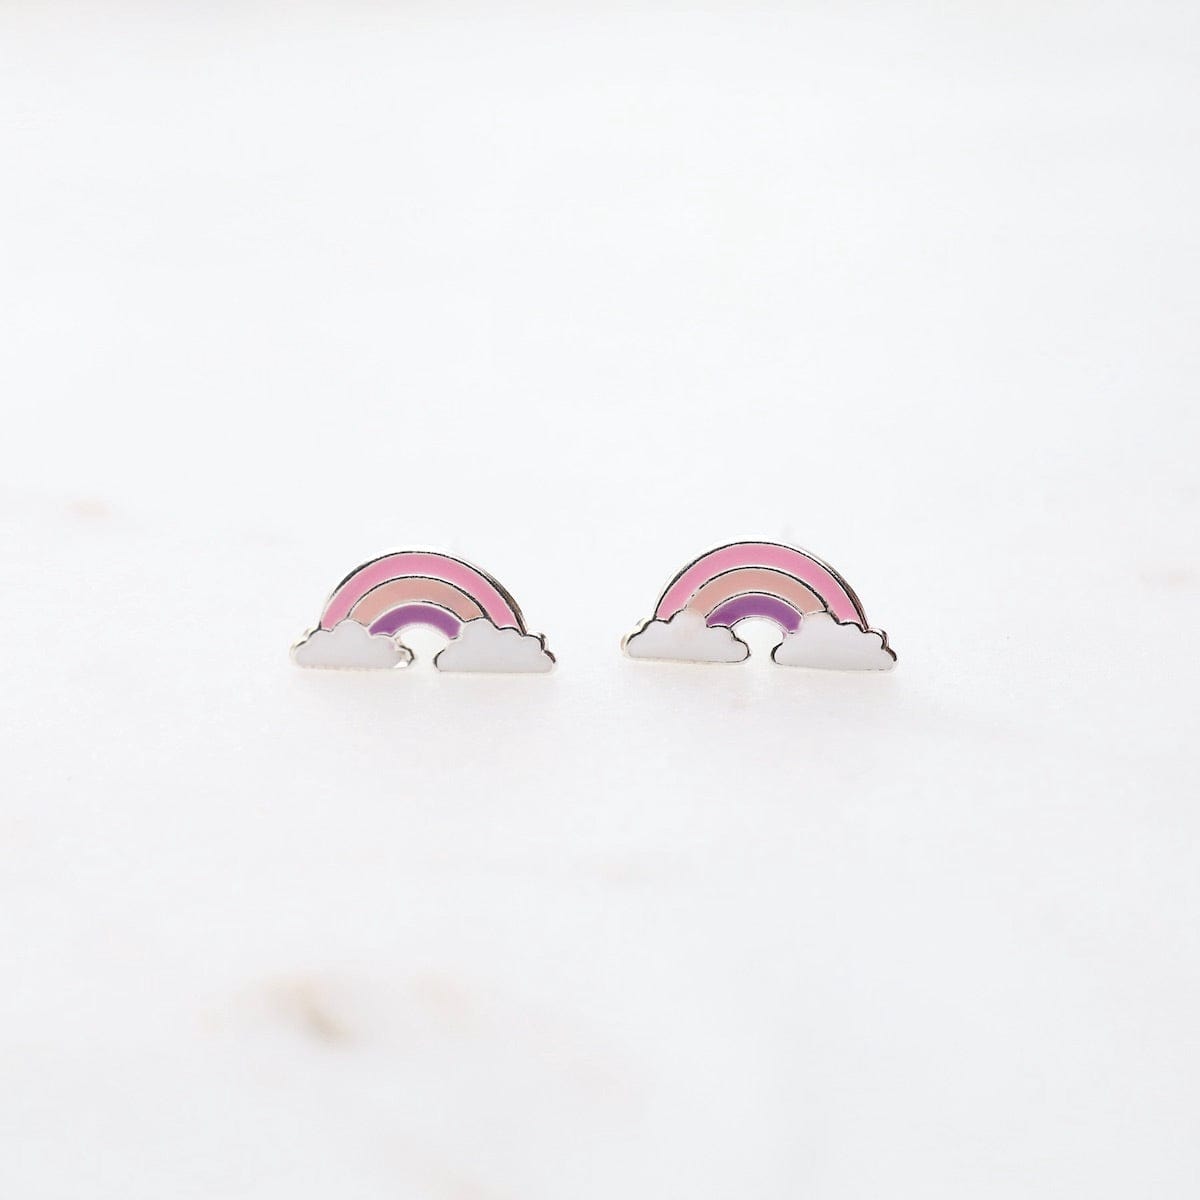 EAR Enamel Rainbow in Clouds Post Earrings - Pink, Light Pink, & Purple